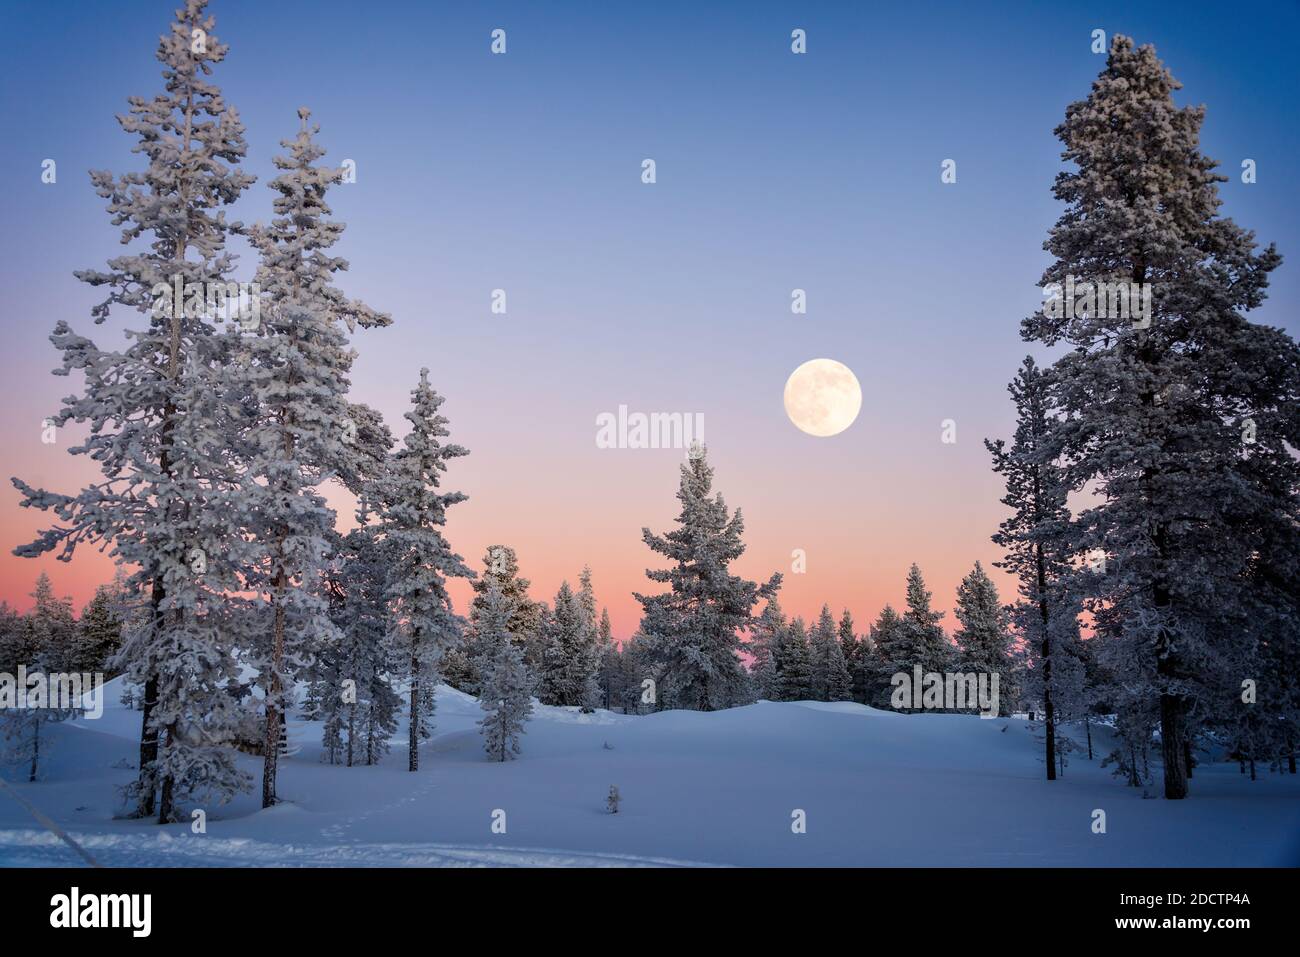 Paysage d'arbres enneigés en hiver en Laponie, en Finlande, avec la lune qui s'élève au crépuscule Banque D'Images